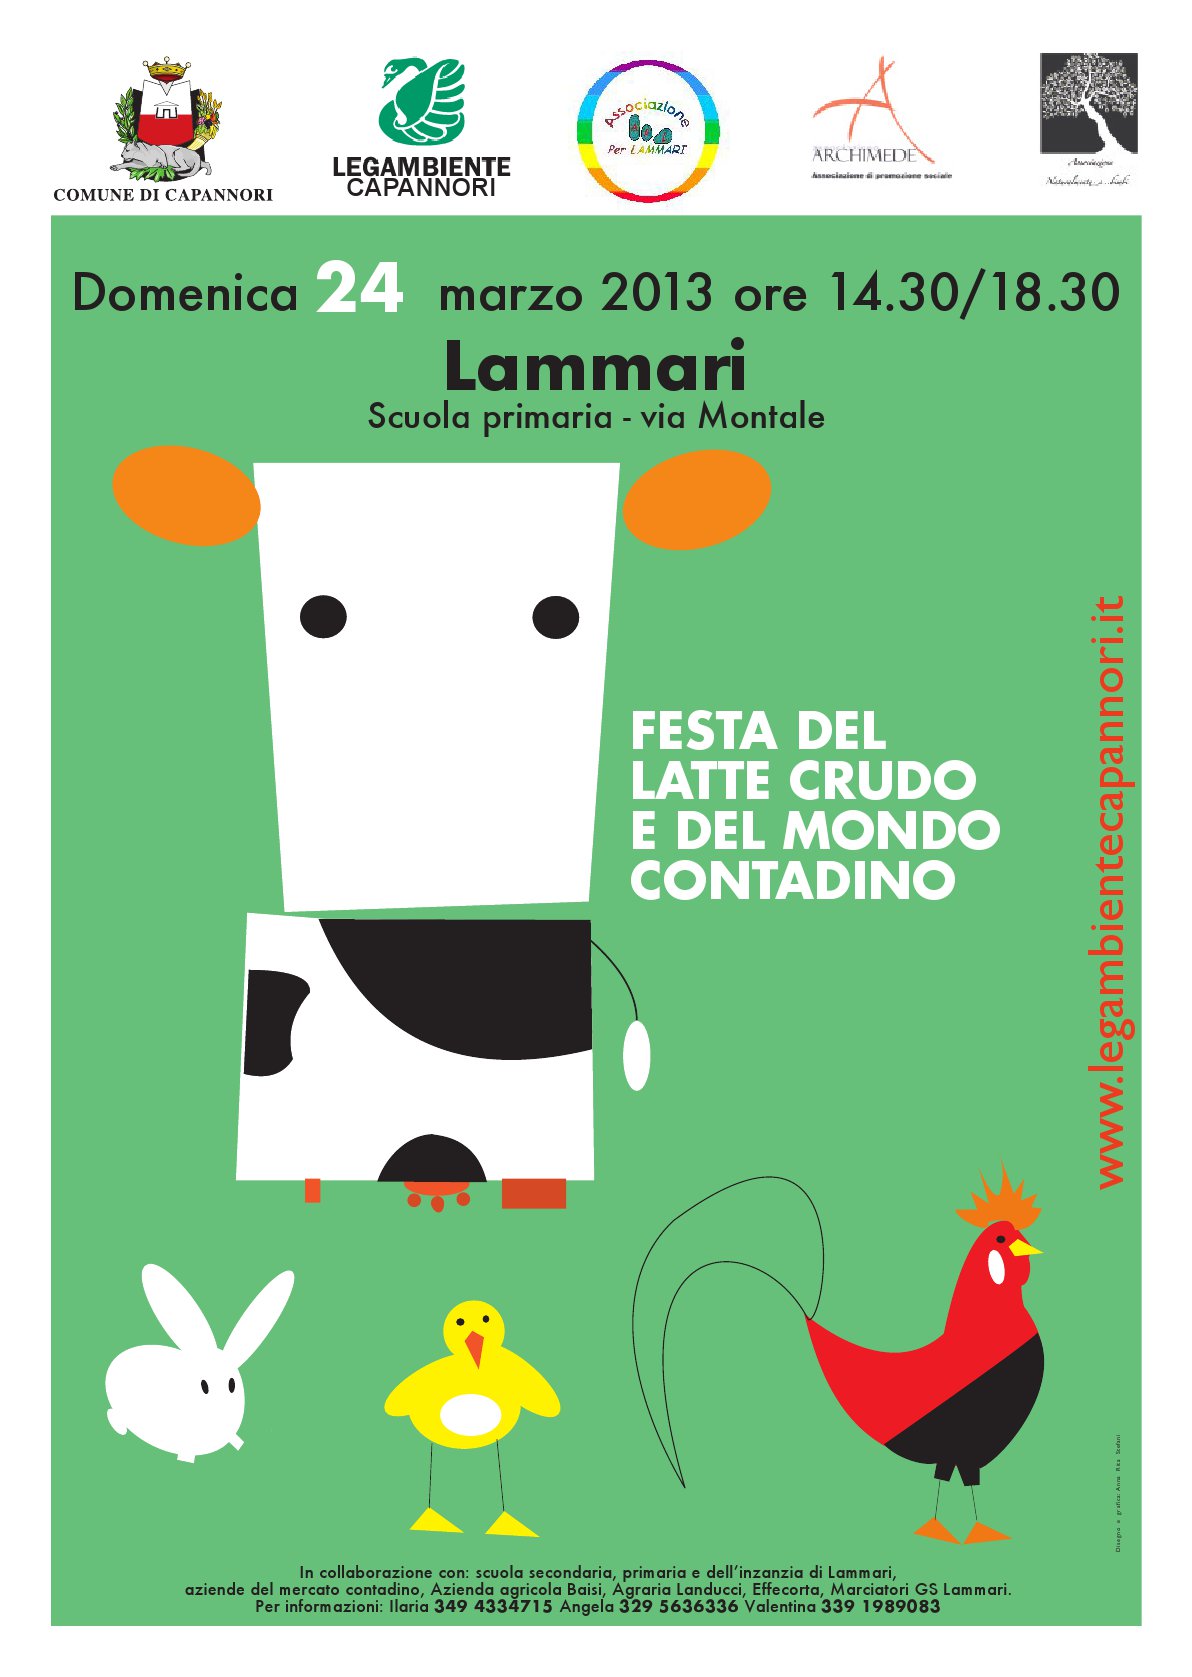 Domenica 7 Aprile la Festa del Latte crudo a Lammari